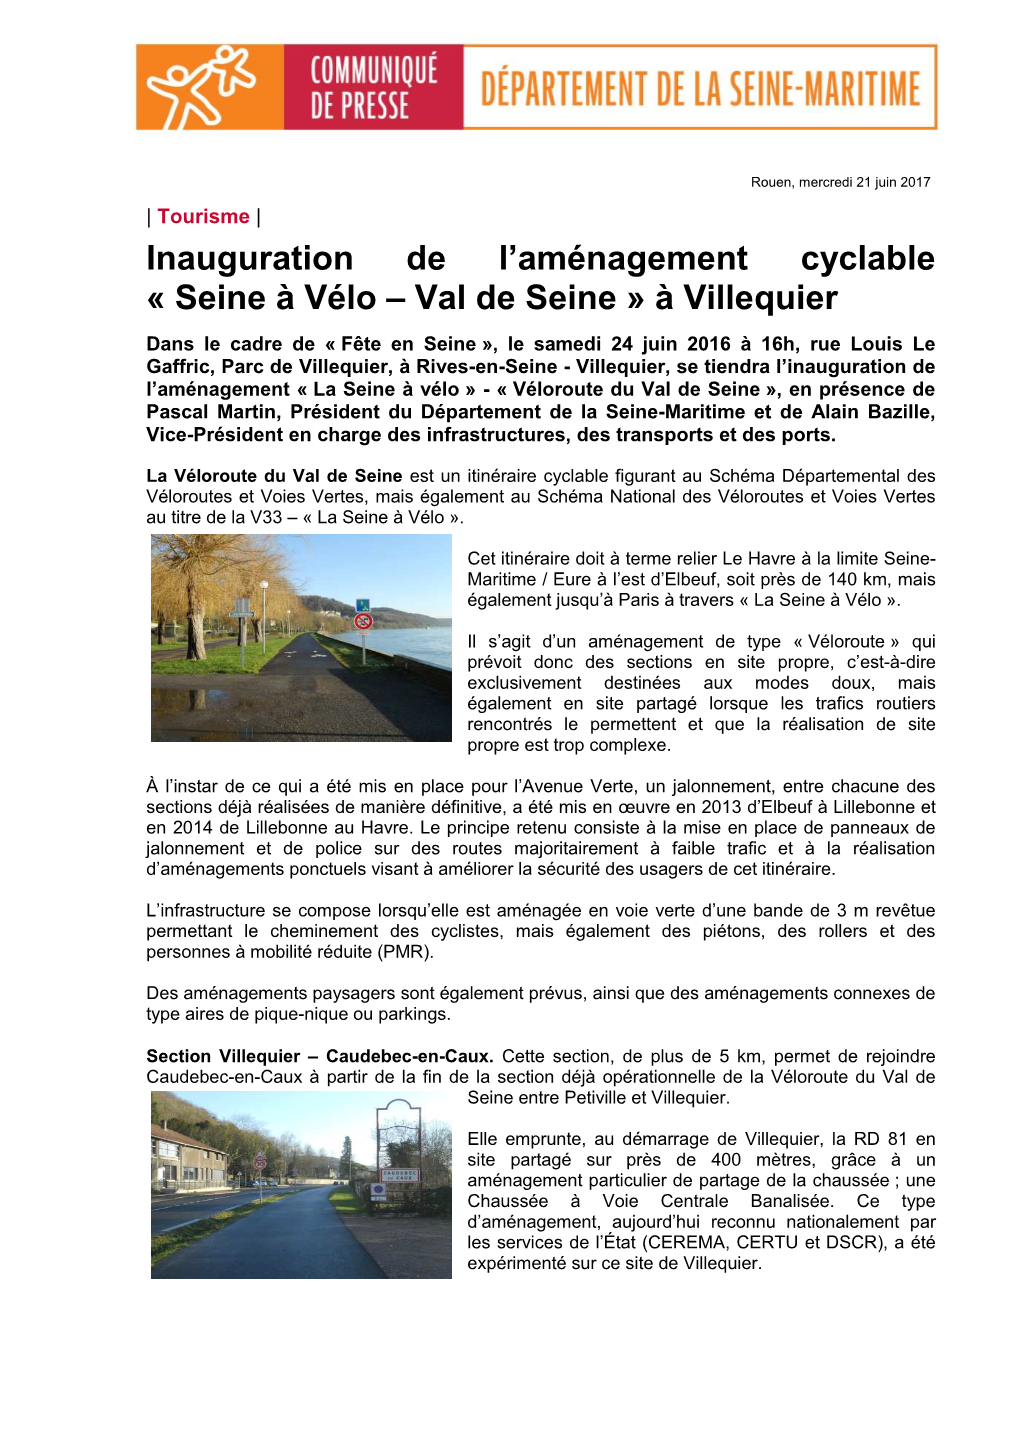 Inauguration De L'aménagement Cyclable « Seine À Vélo – Val De